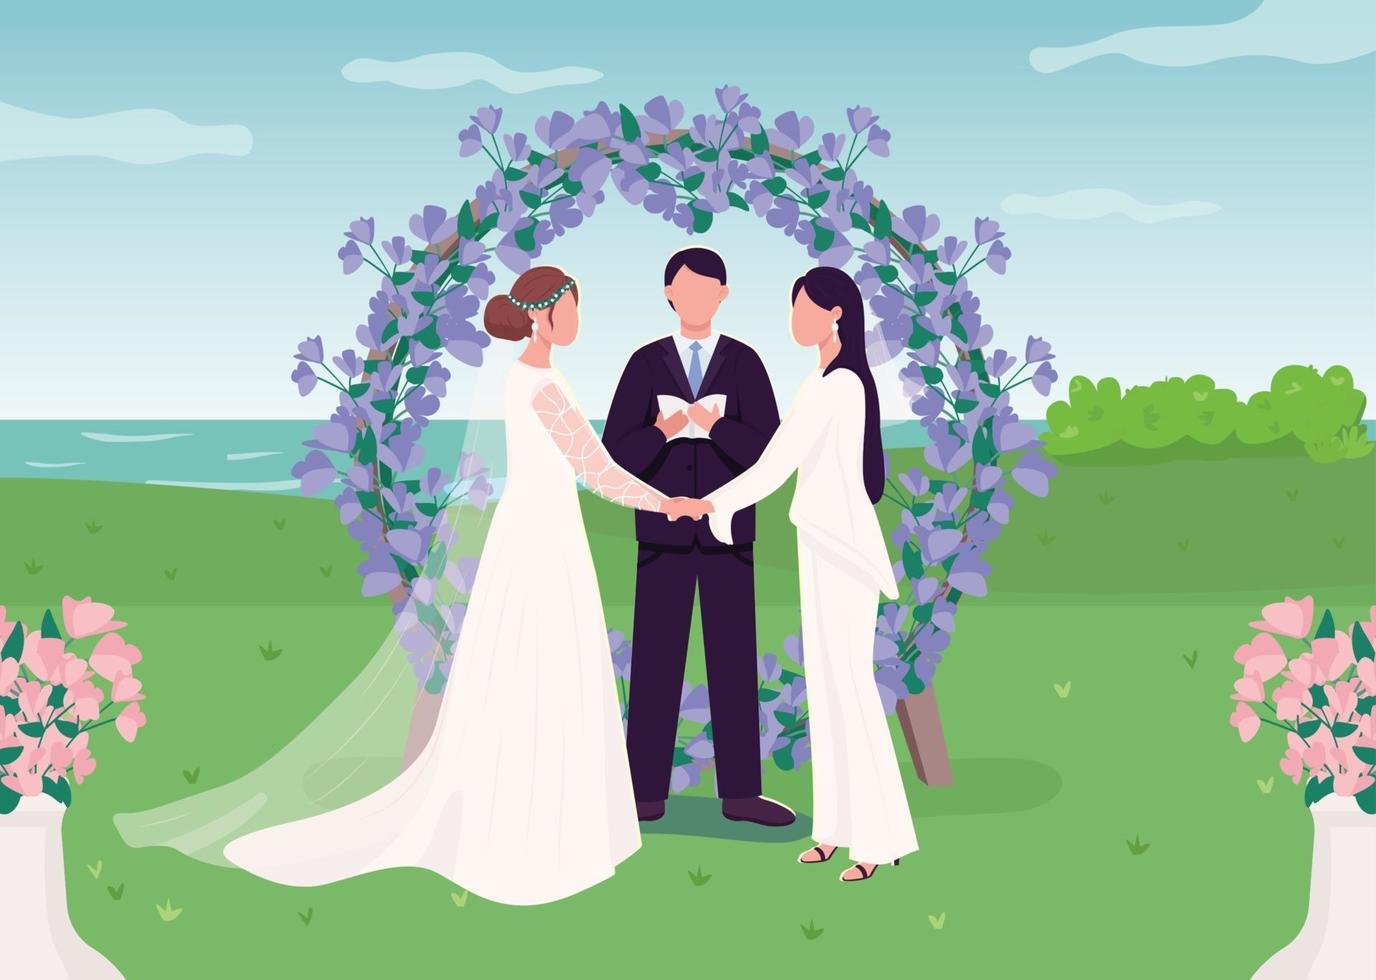 Cérémonie de mariage pour un couple de lesbiennes illustration vectorielle de couleur plate vecteur